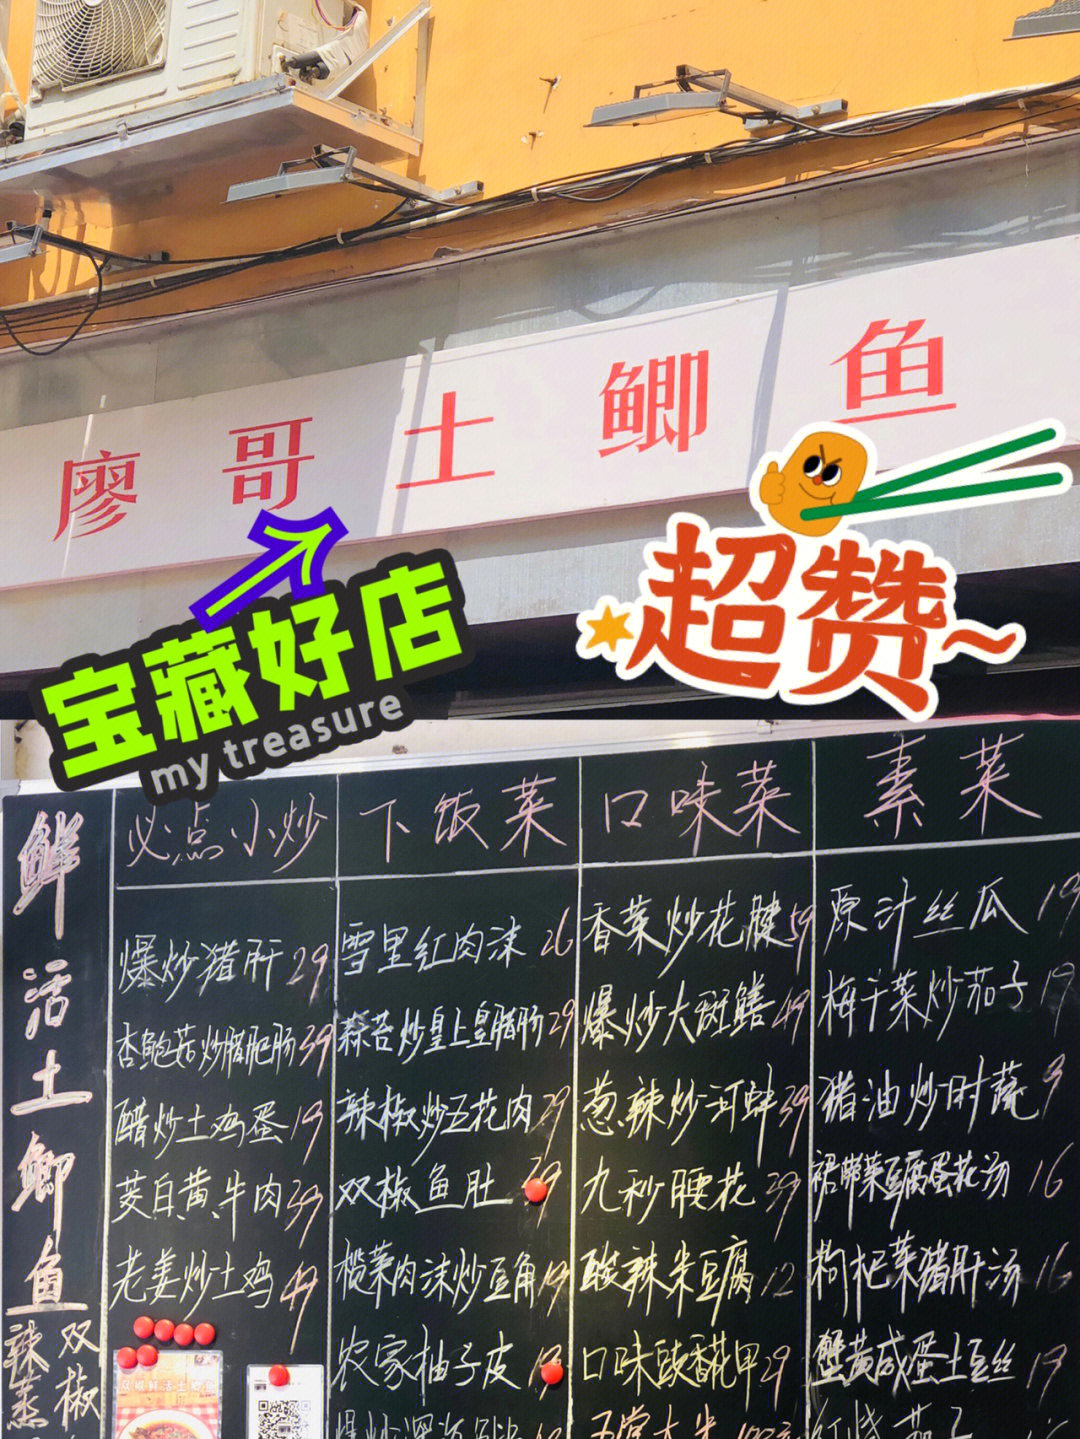 中餐厅之前看到这个店名字就是妥妥的辣椒炒肉的那种味道吃不了辣的我